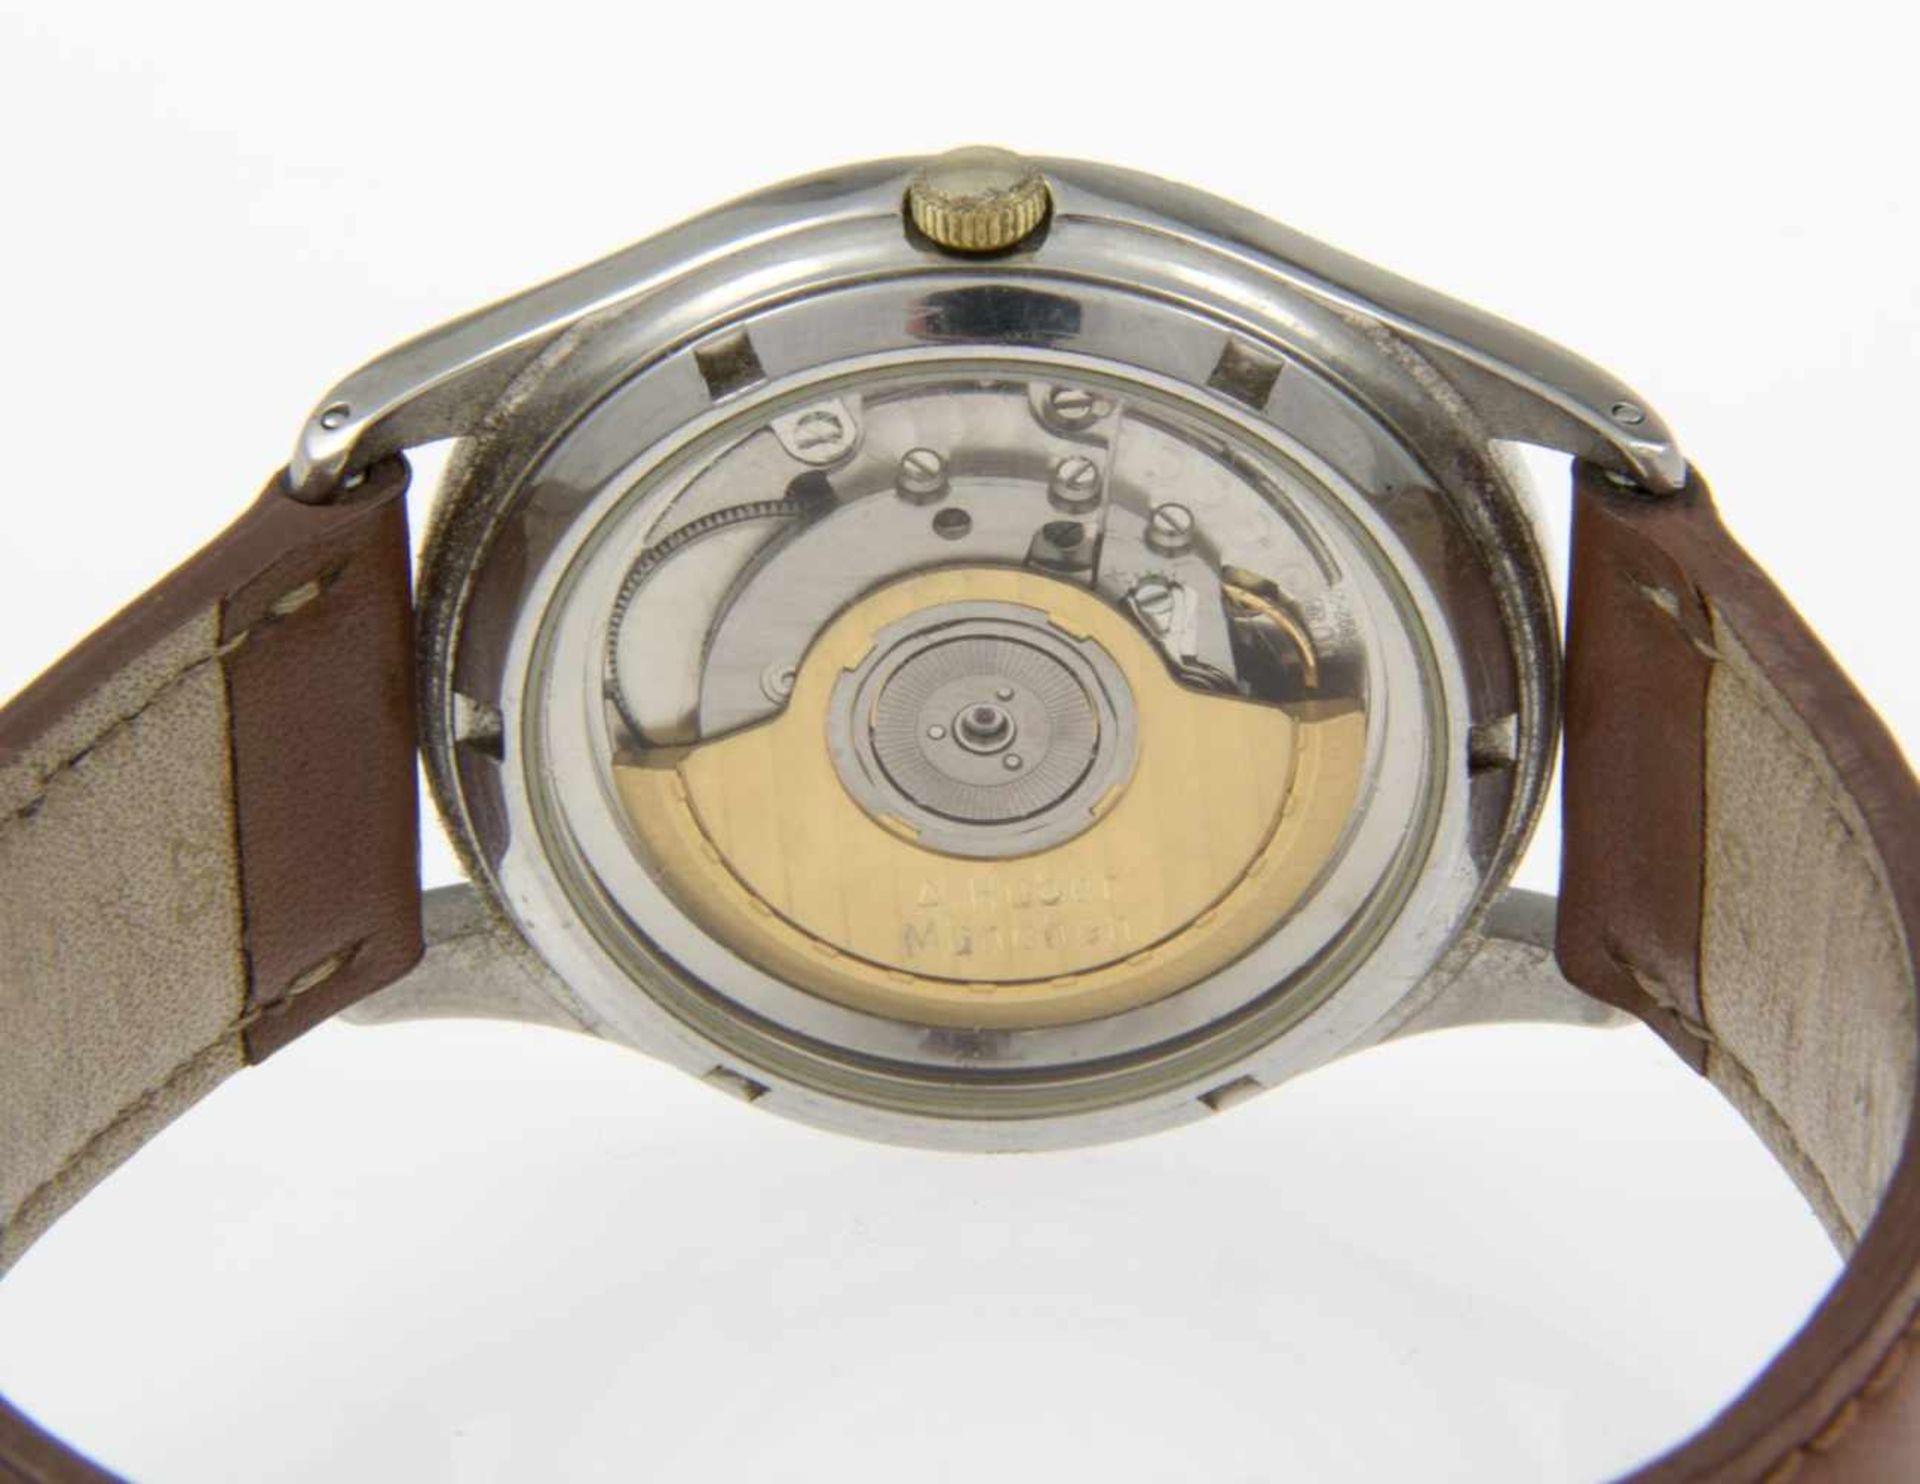 Automatische Andreas Huber-ArmbanduhrGehäuse aus Stahl. Goldlünette. Saphirglasboden. Weißes - Bild 2 aus 3